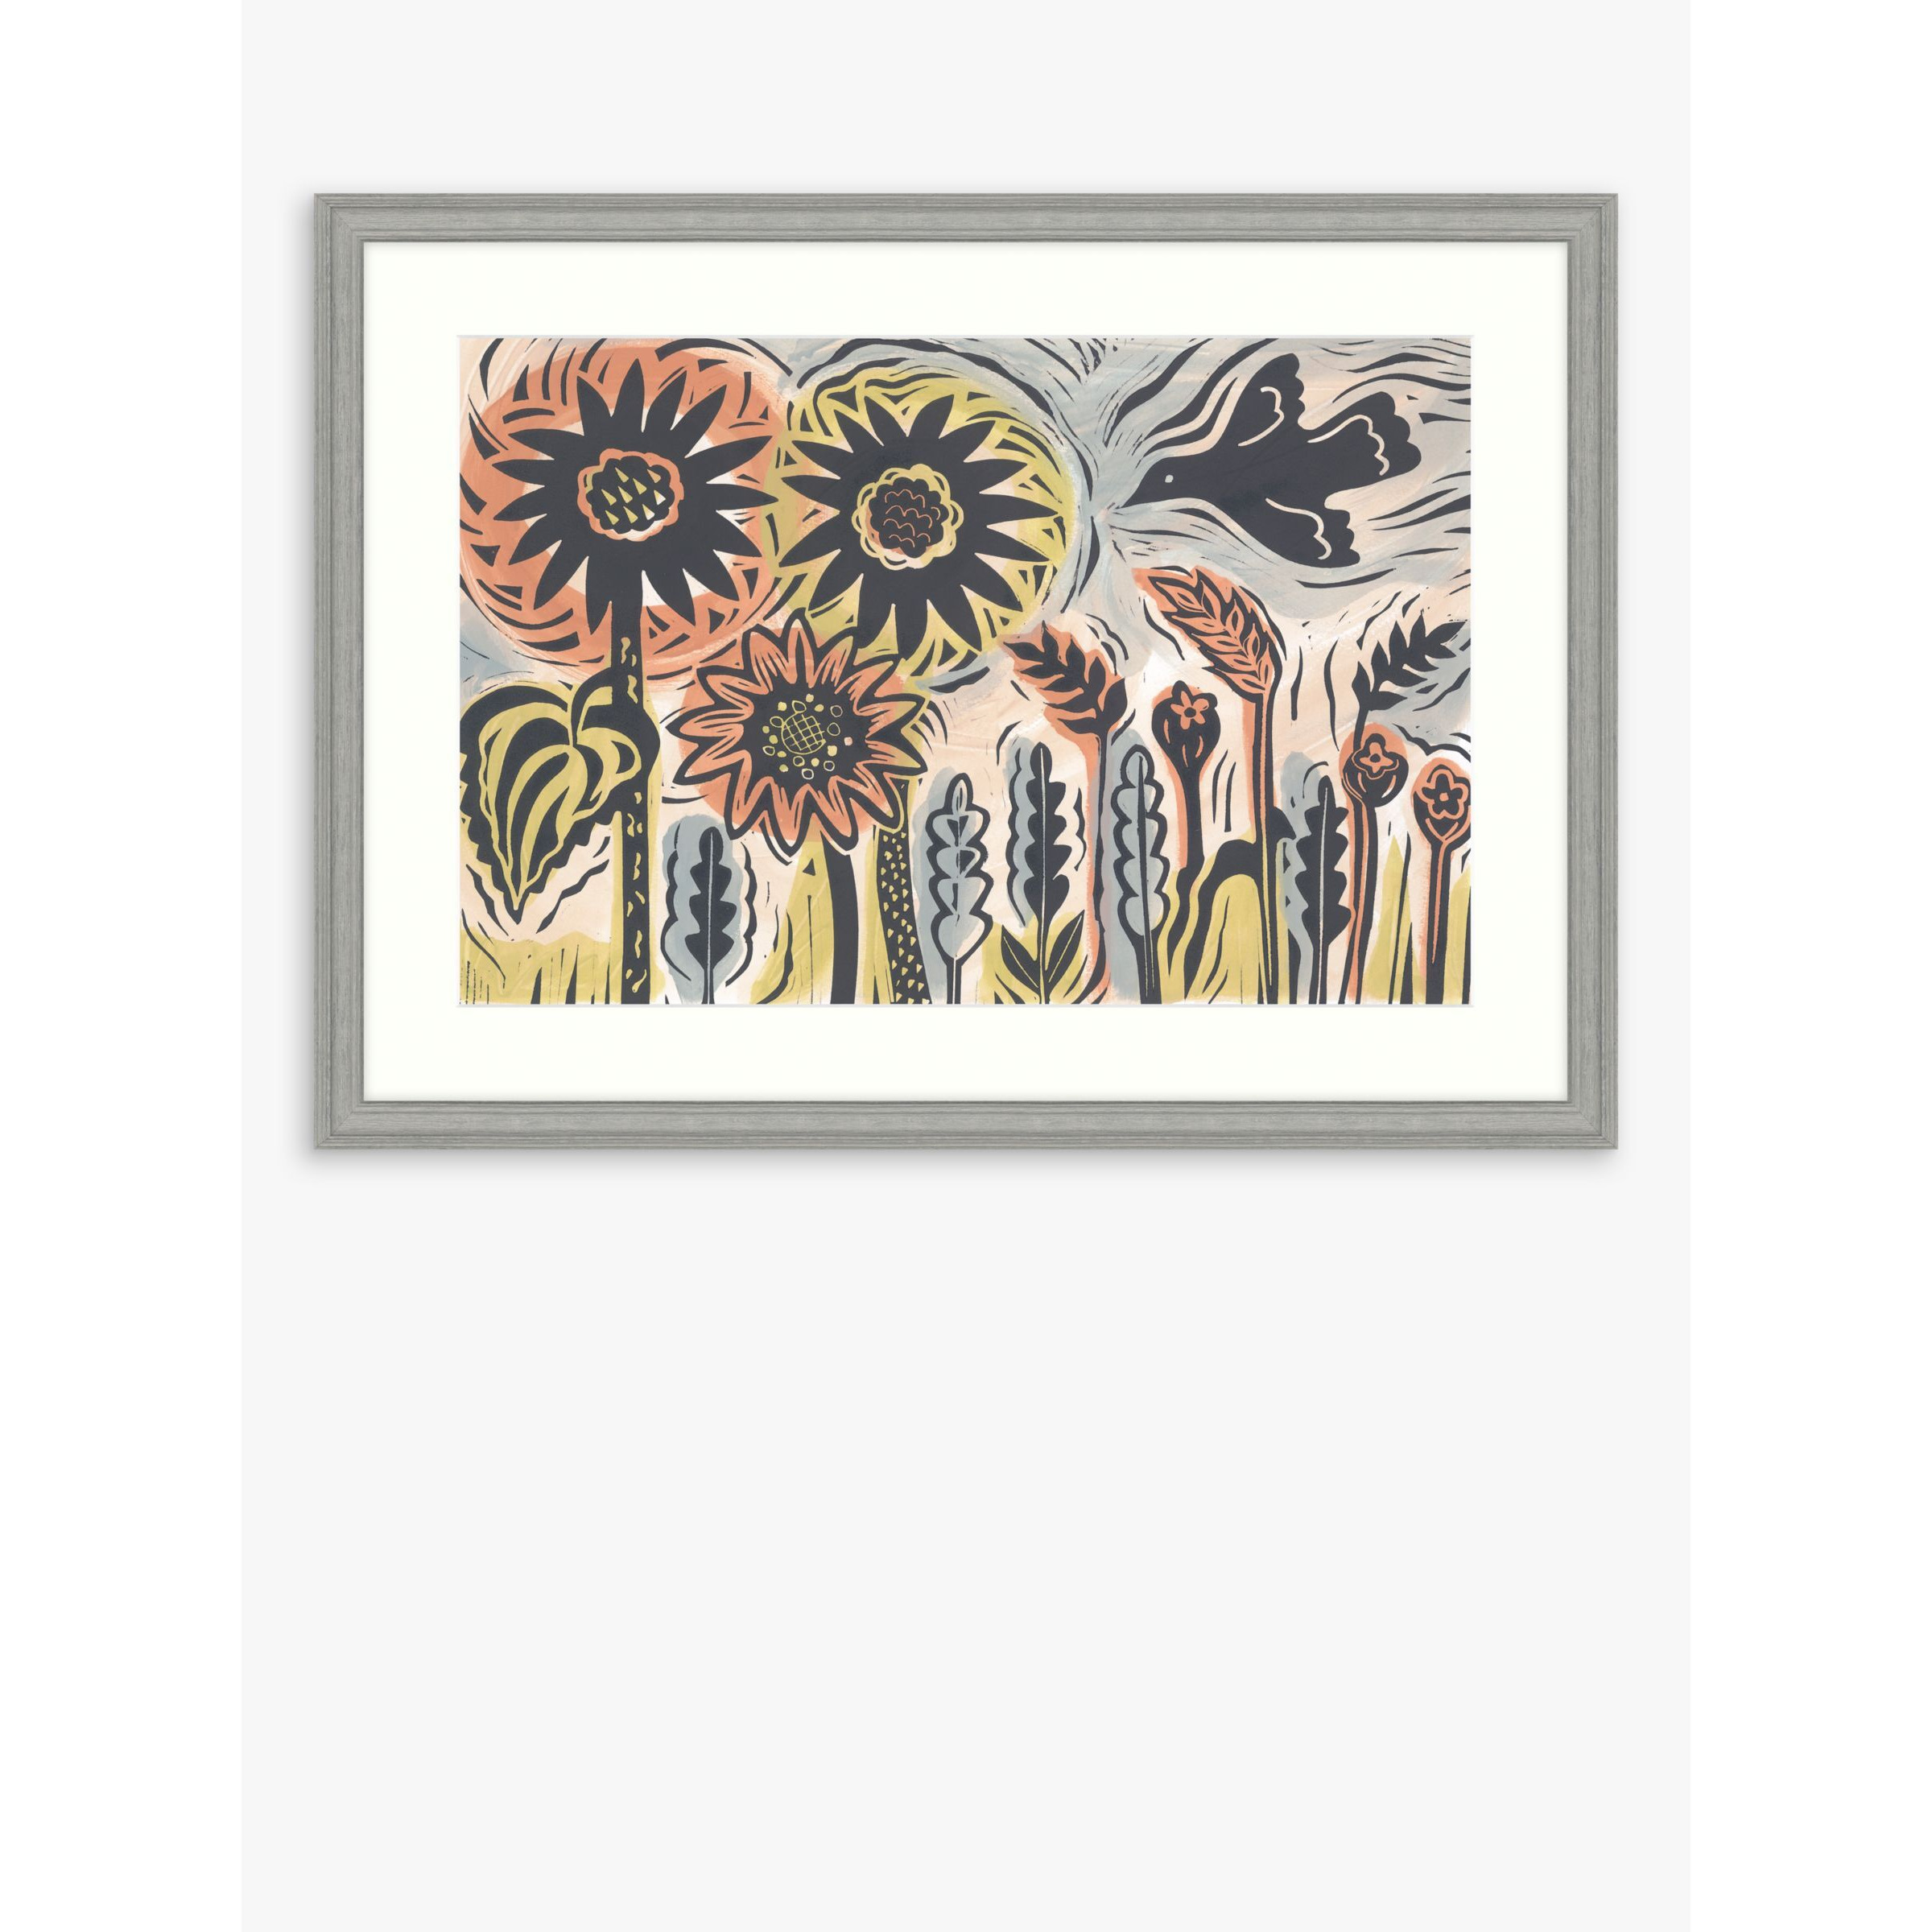 Kate Millbank - 'Summer Garden' Framed Print & Mount, 55 x 75cm, Multi - image 1